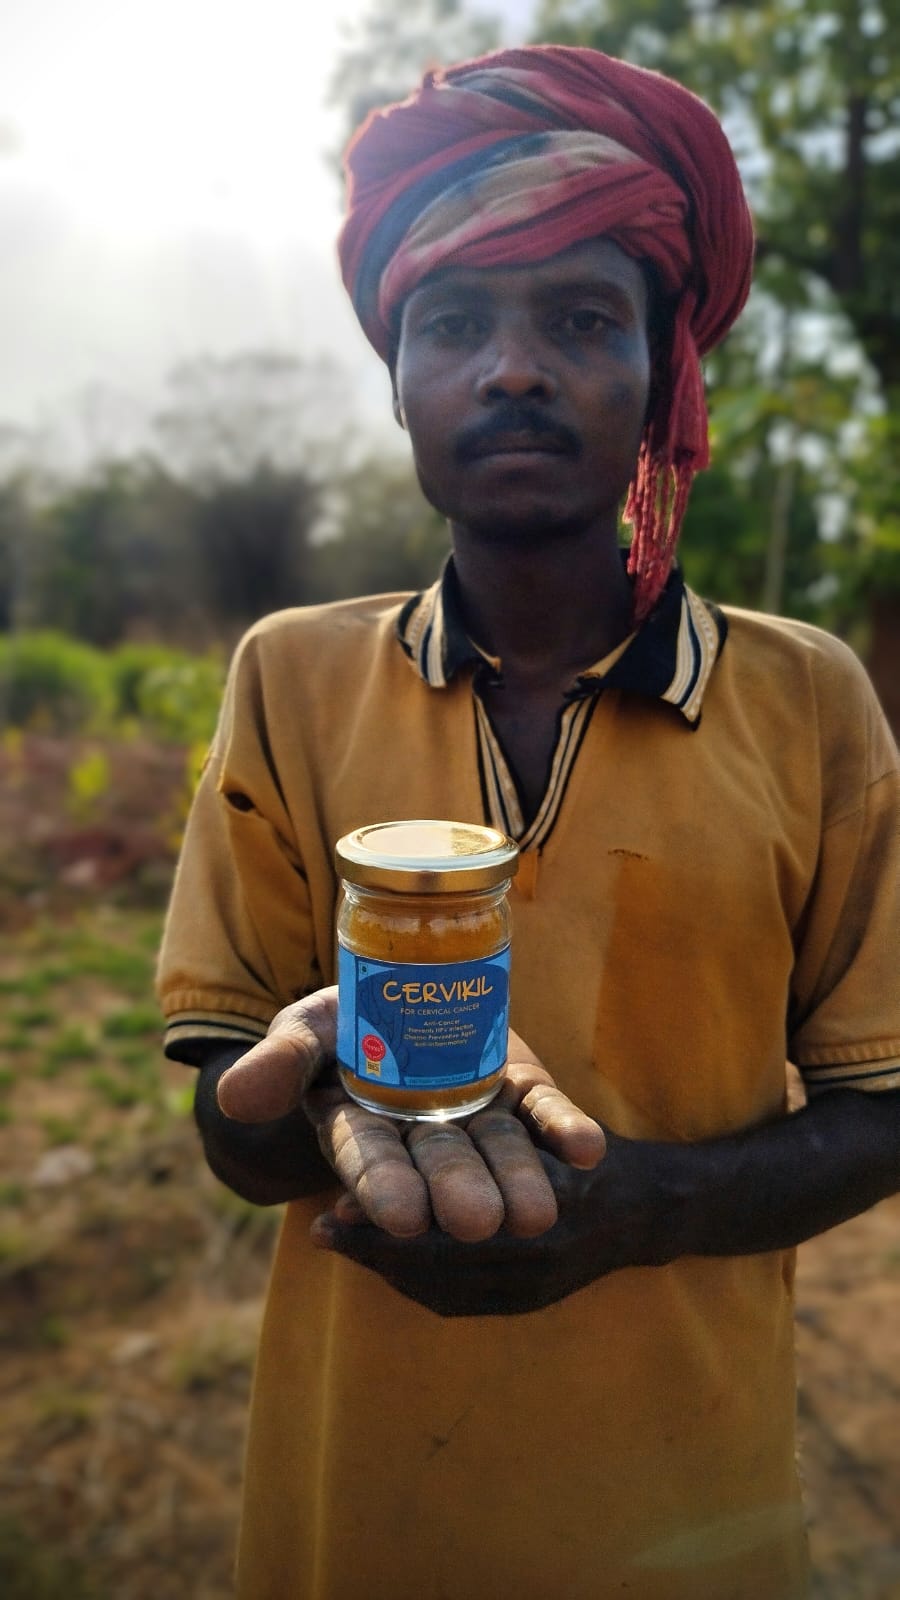 Sadanand, nuestro trabajador agrícola, sosteniendo una botella de Cervikil: un producto de Bagdara Farm para el tratamiento y prevención del cáncer de mama.